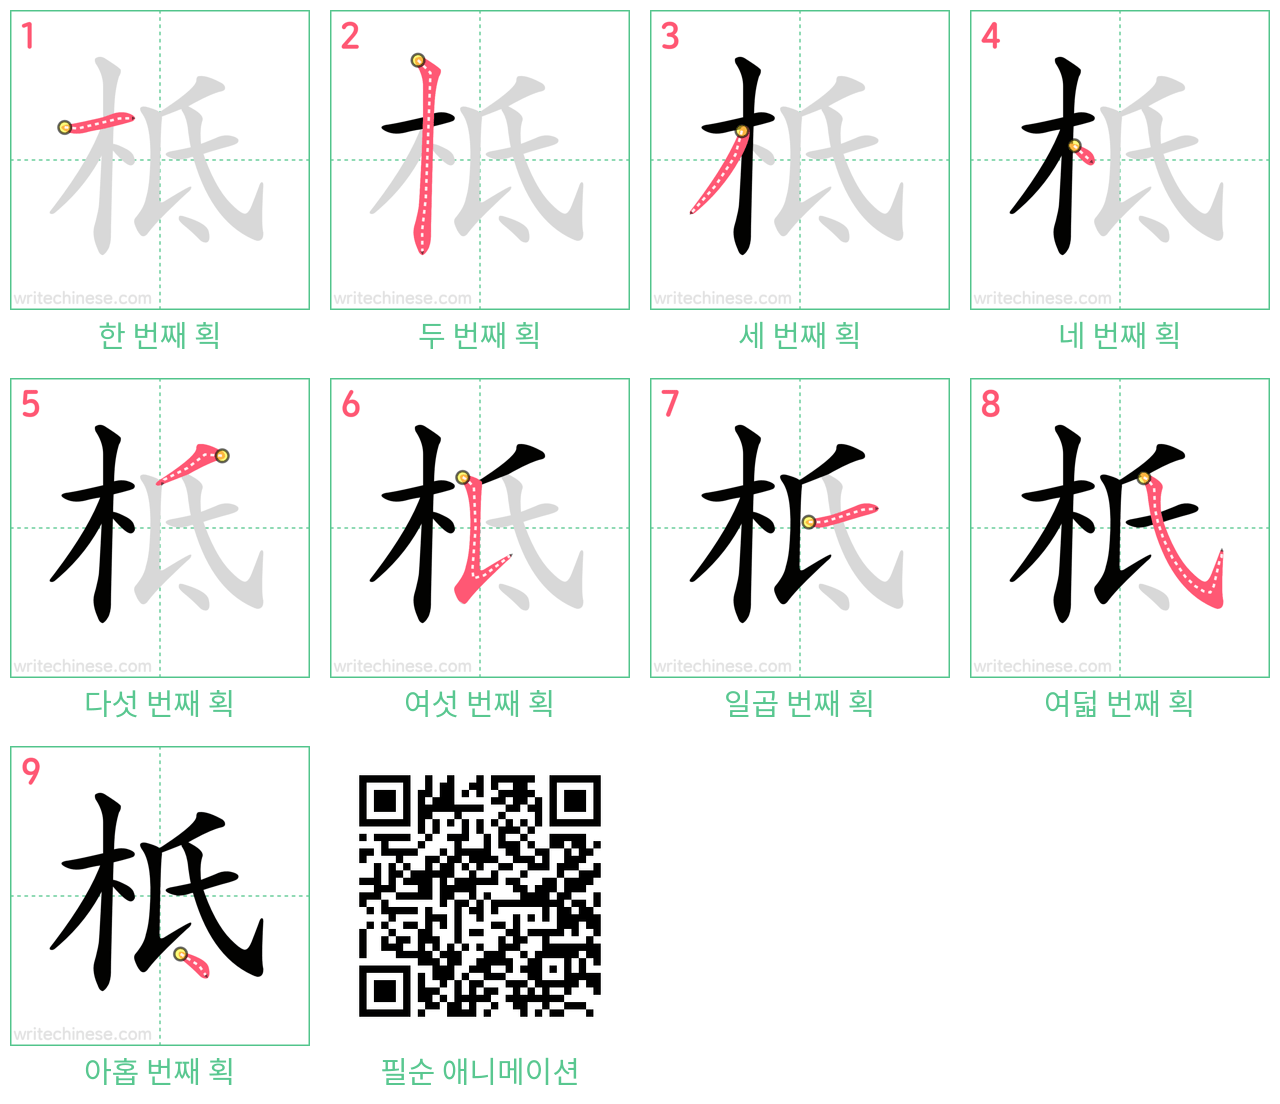 柢 step-by-step stroke order diagrams